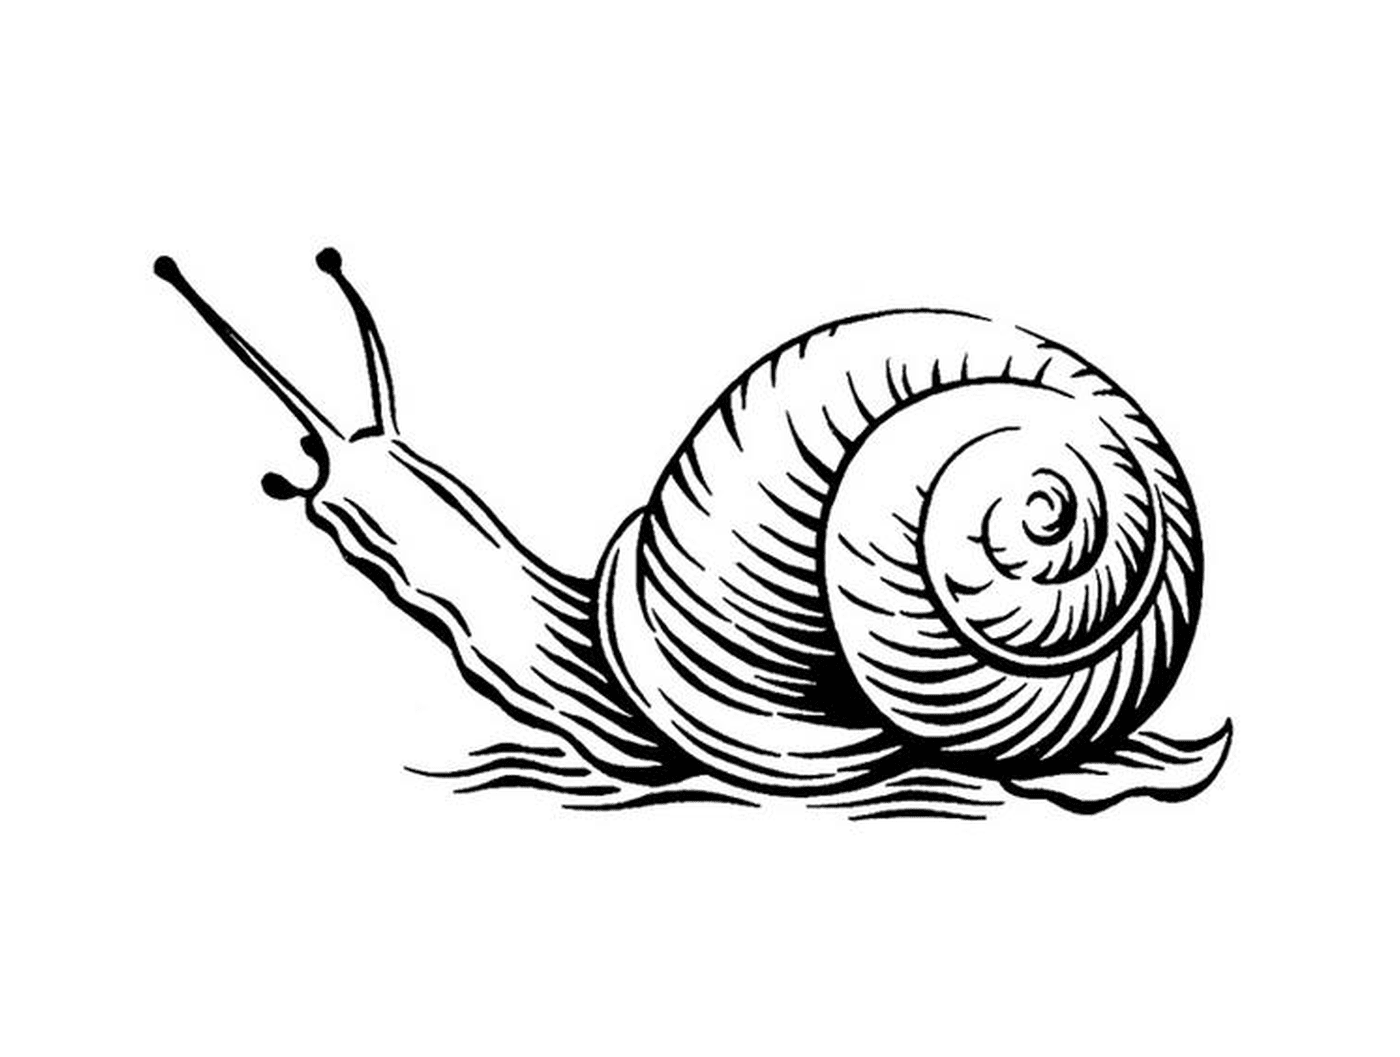  史蒂文·诺布设计的现实蜗牛 